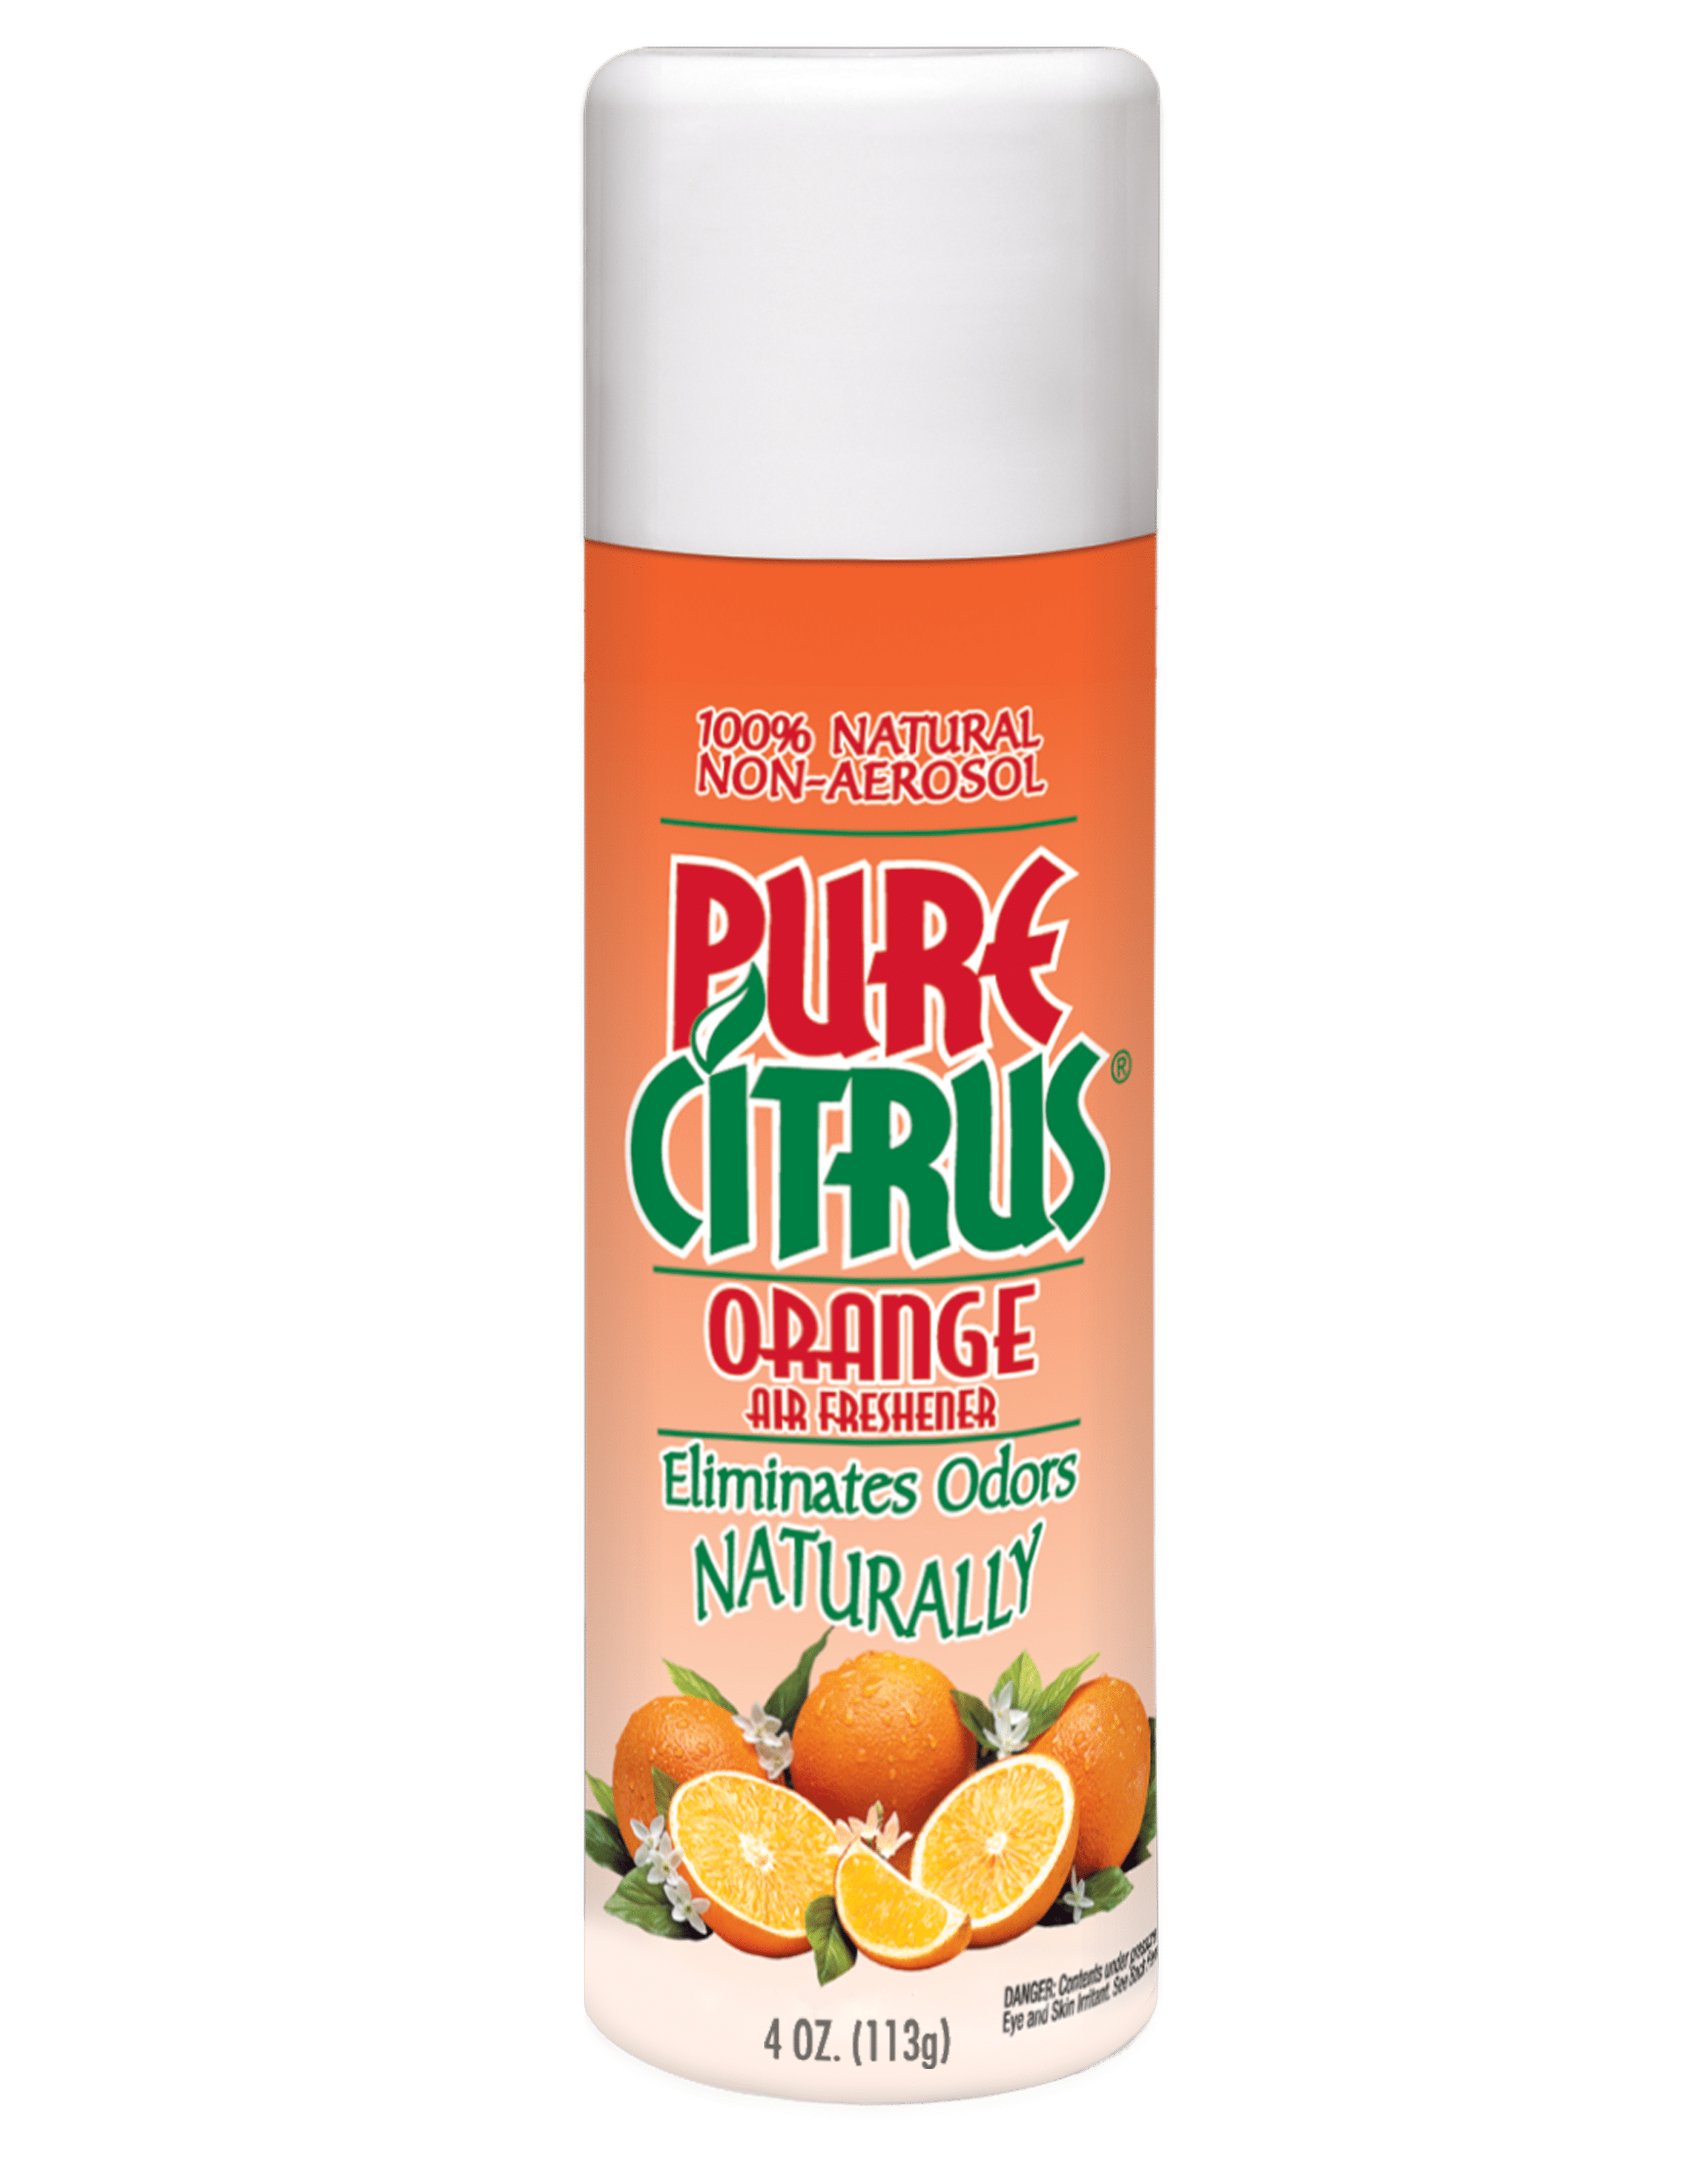 Pure Citrus Orange Air Freshener, 4oz.   Orange  Scented Non-Aerosol Air Freshener